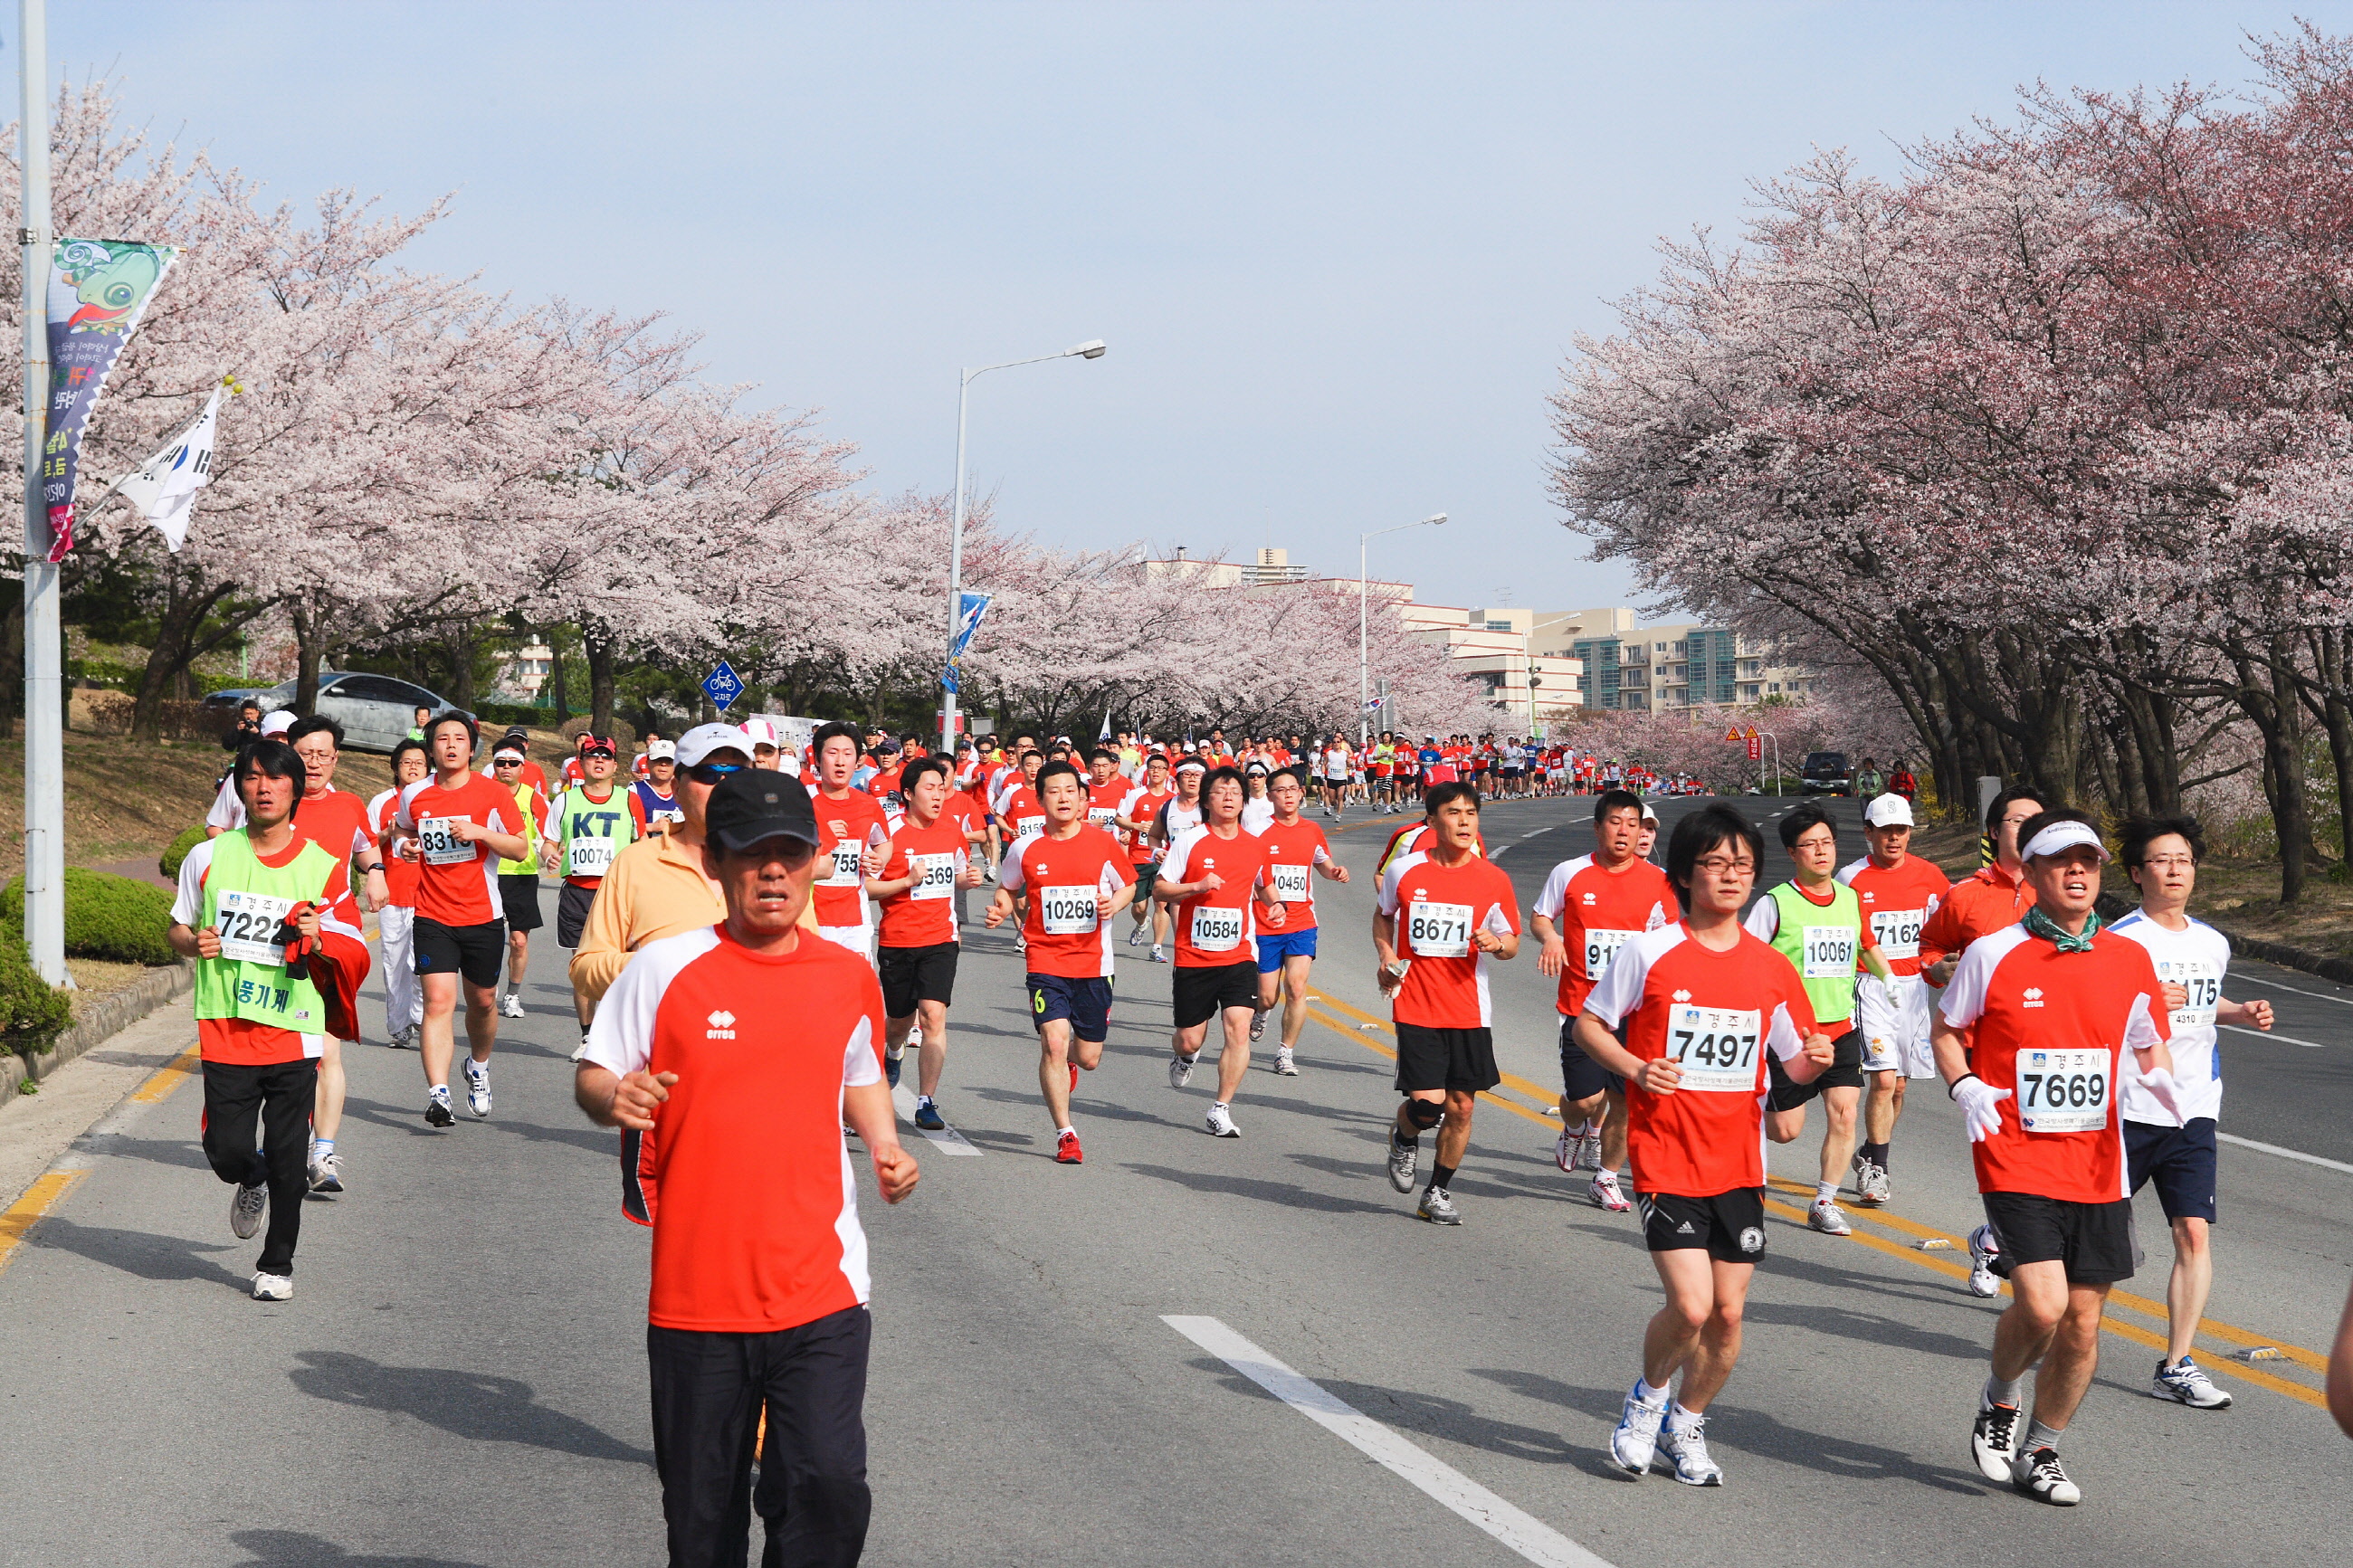 바람에 흩날리는 벚꽃물결과 함께 달리는 경주벚꽃마라톤 1만2천명 선착순 모집